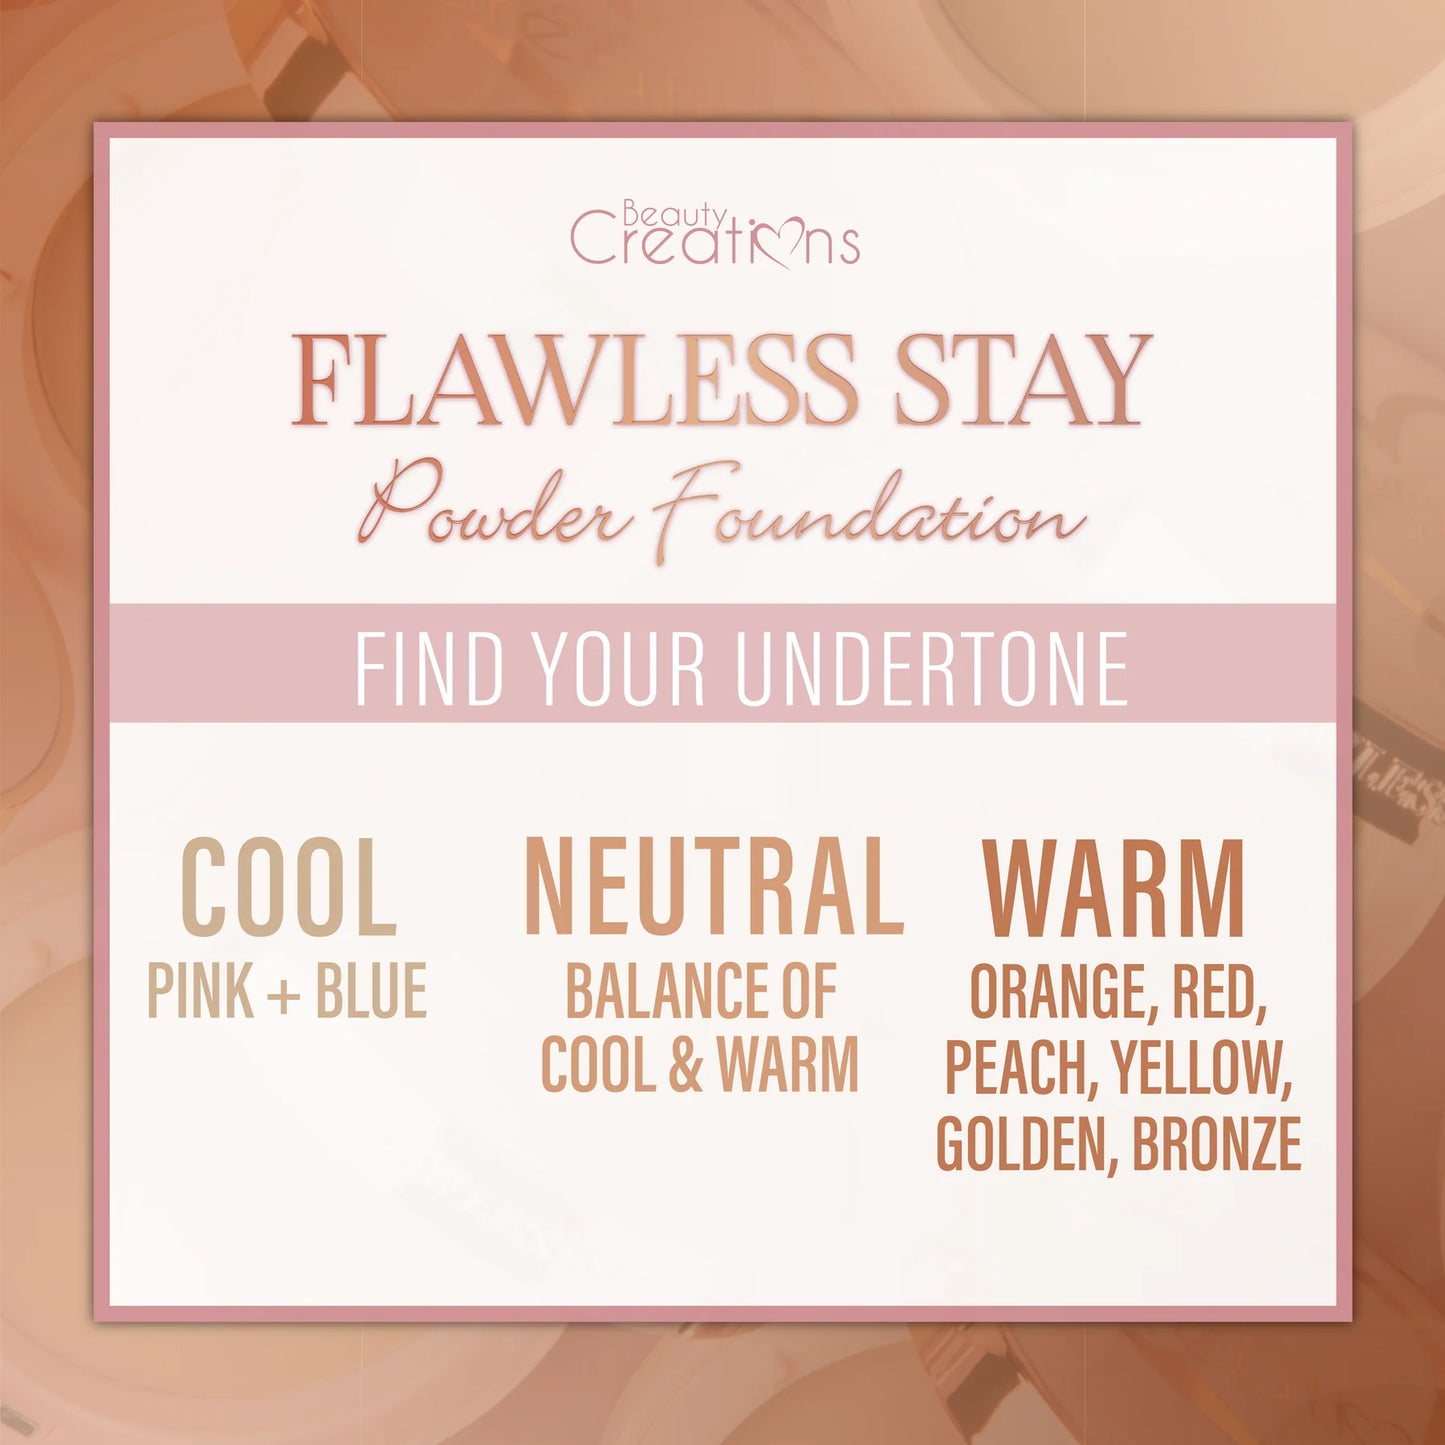 10.0 - Flawless Stay Powder Foundation